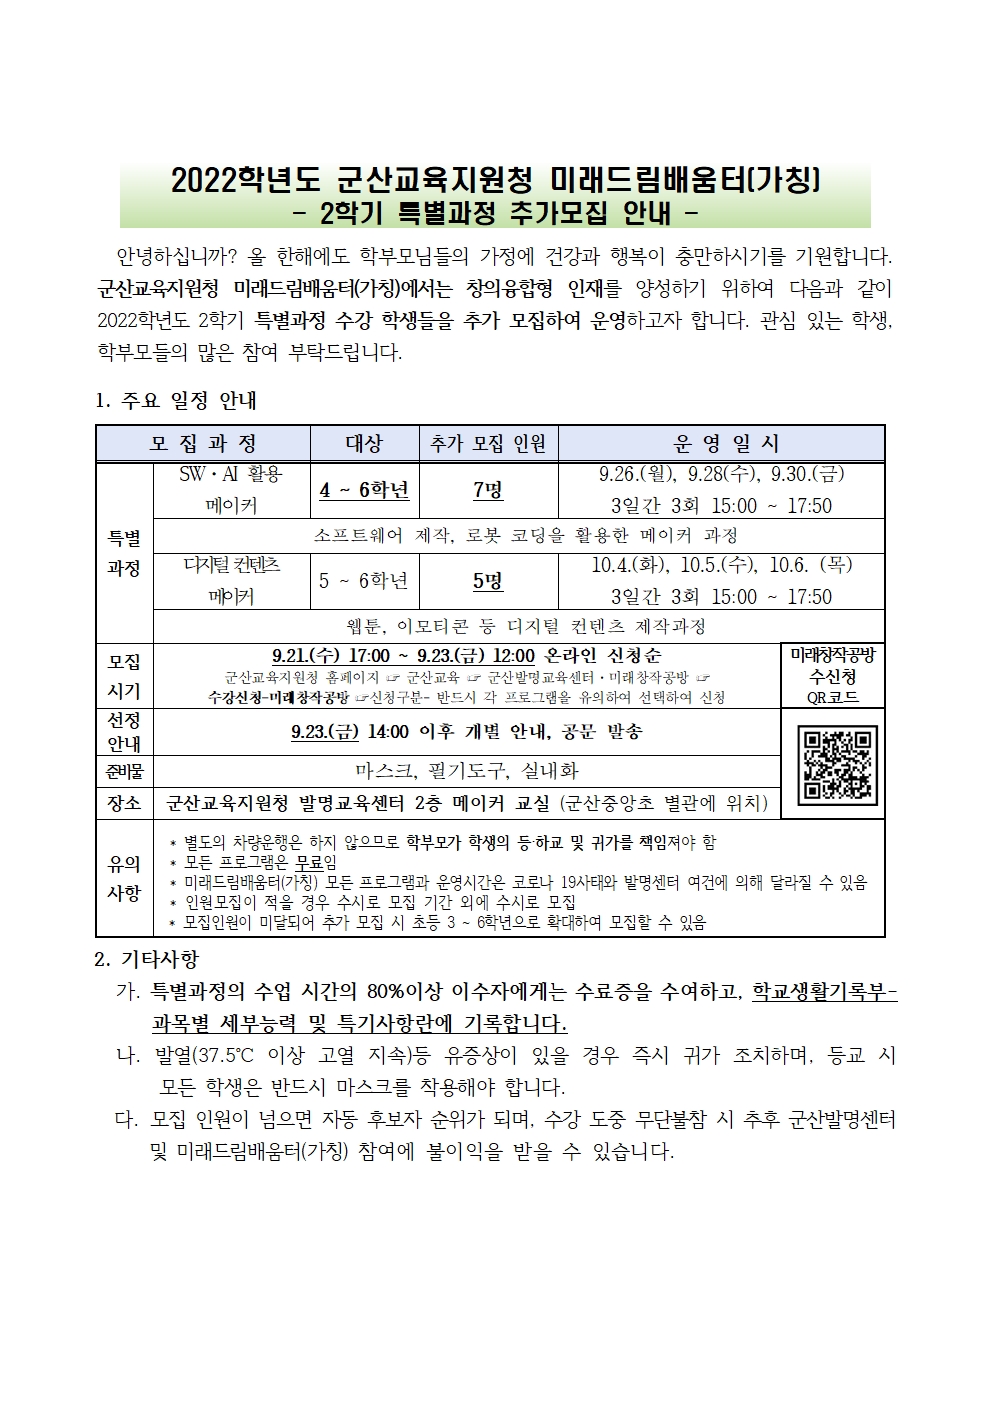 2022. 군산미래드림배움터(가칭) 2학기 특별과정 추가모집 가정통신문001